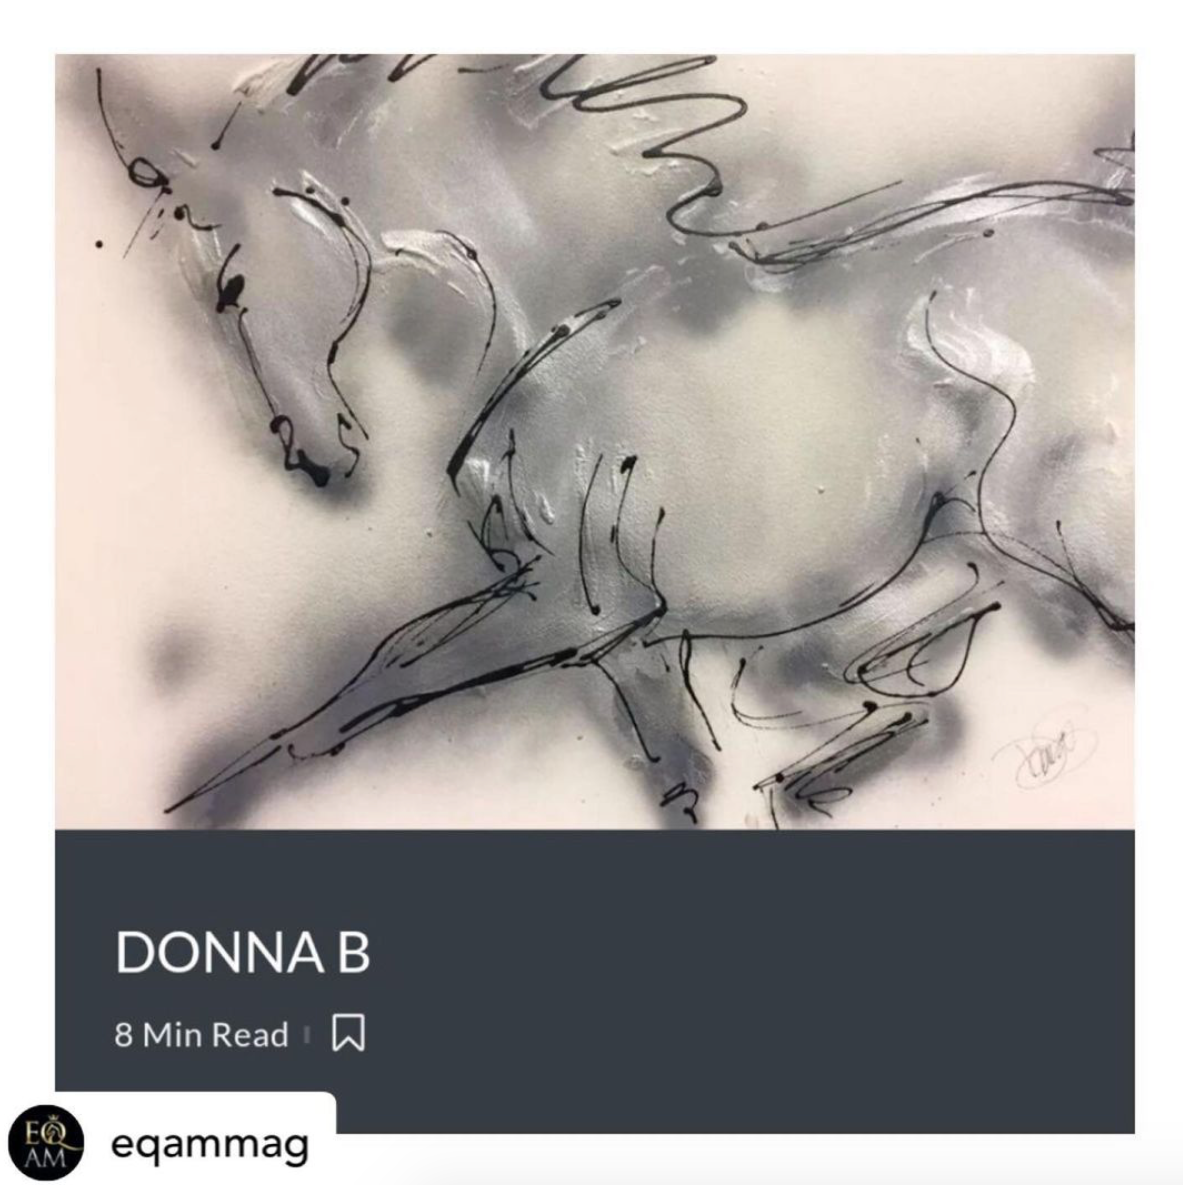 Donna B - Artist, Designer, Stylist